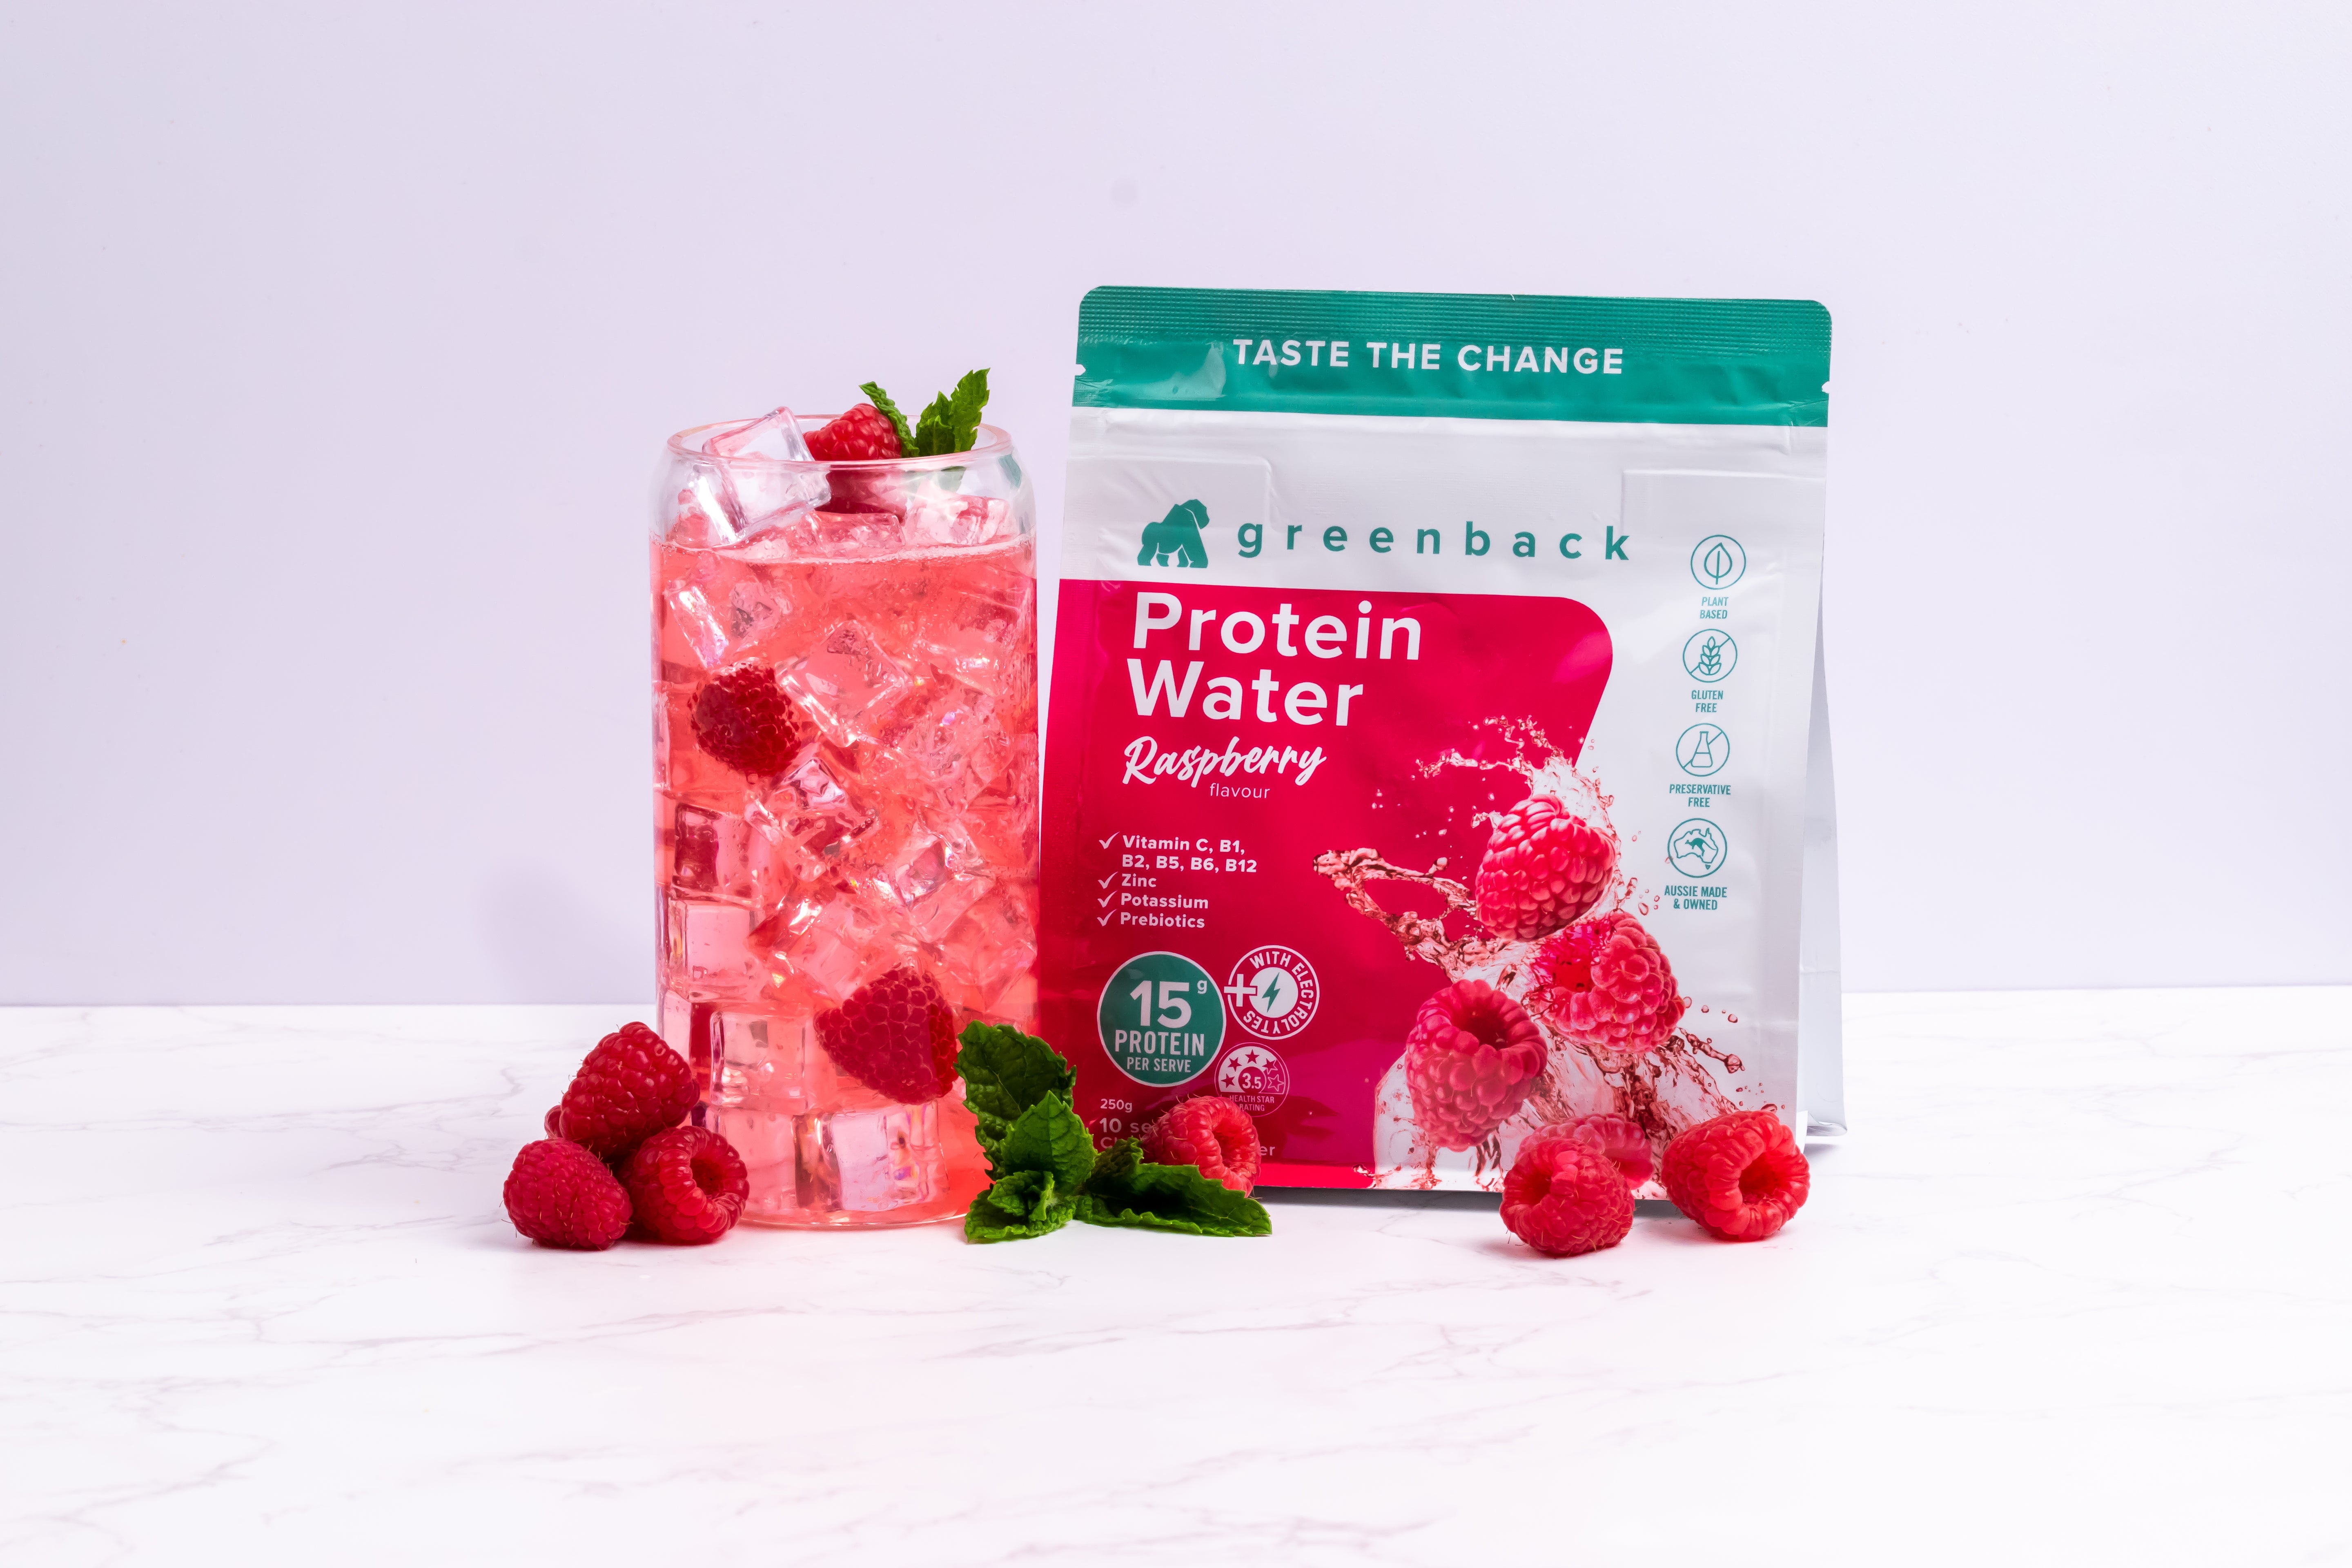 Raspberry Protein Water 250g